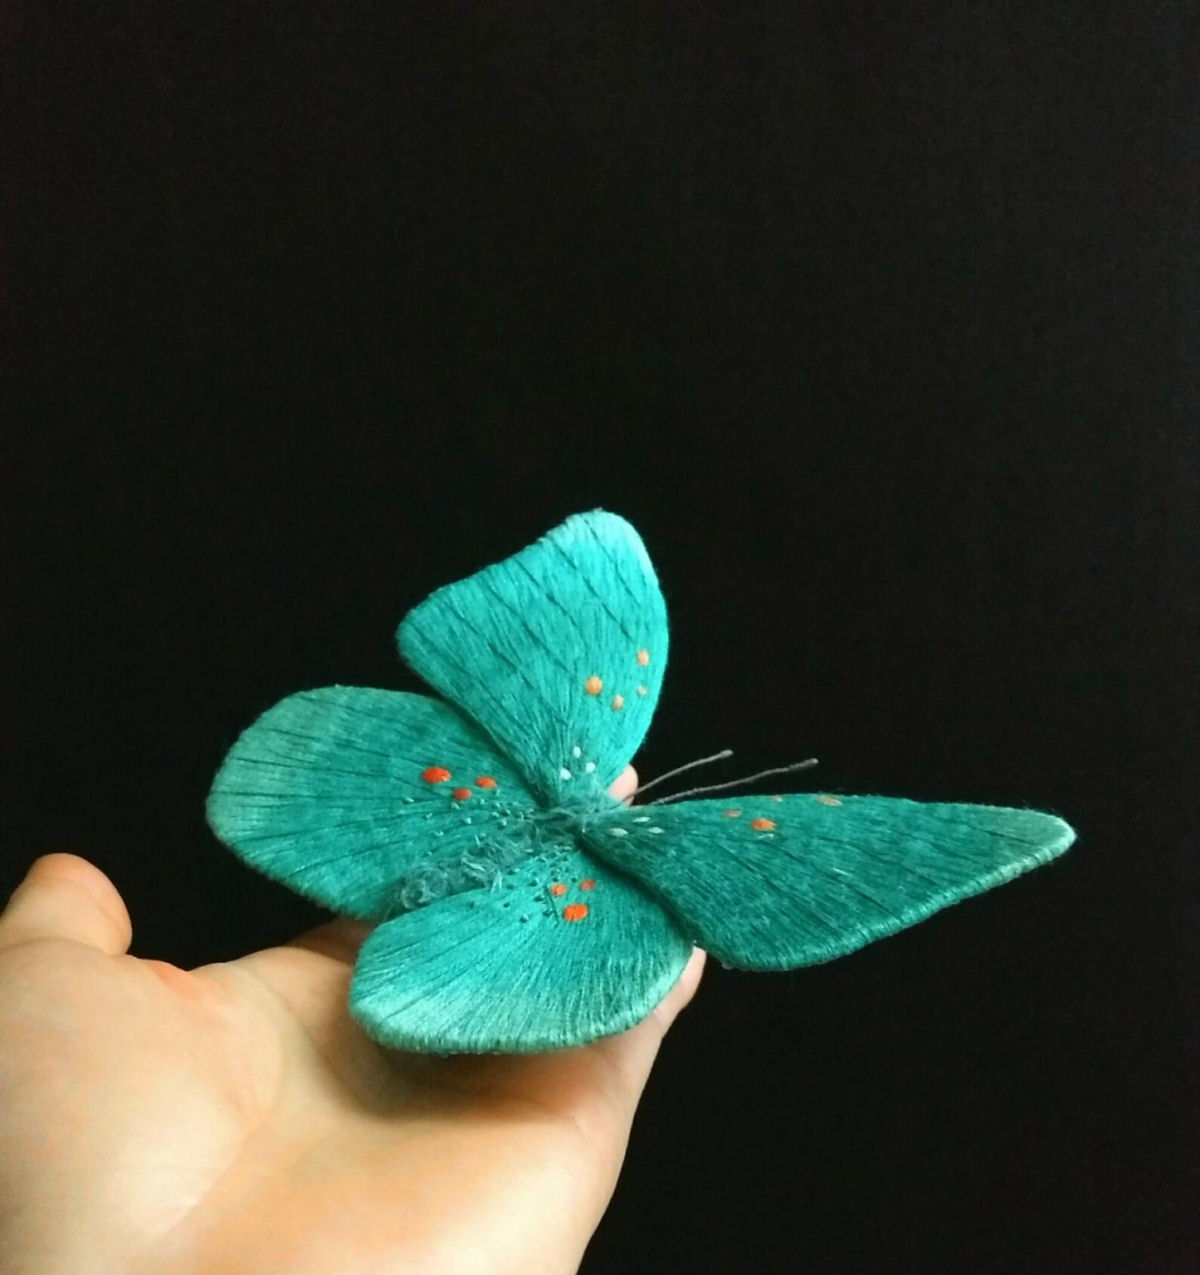 Tons vvidos e bordados intrincados do vida s mariposas notavelmente coloridas 10